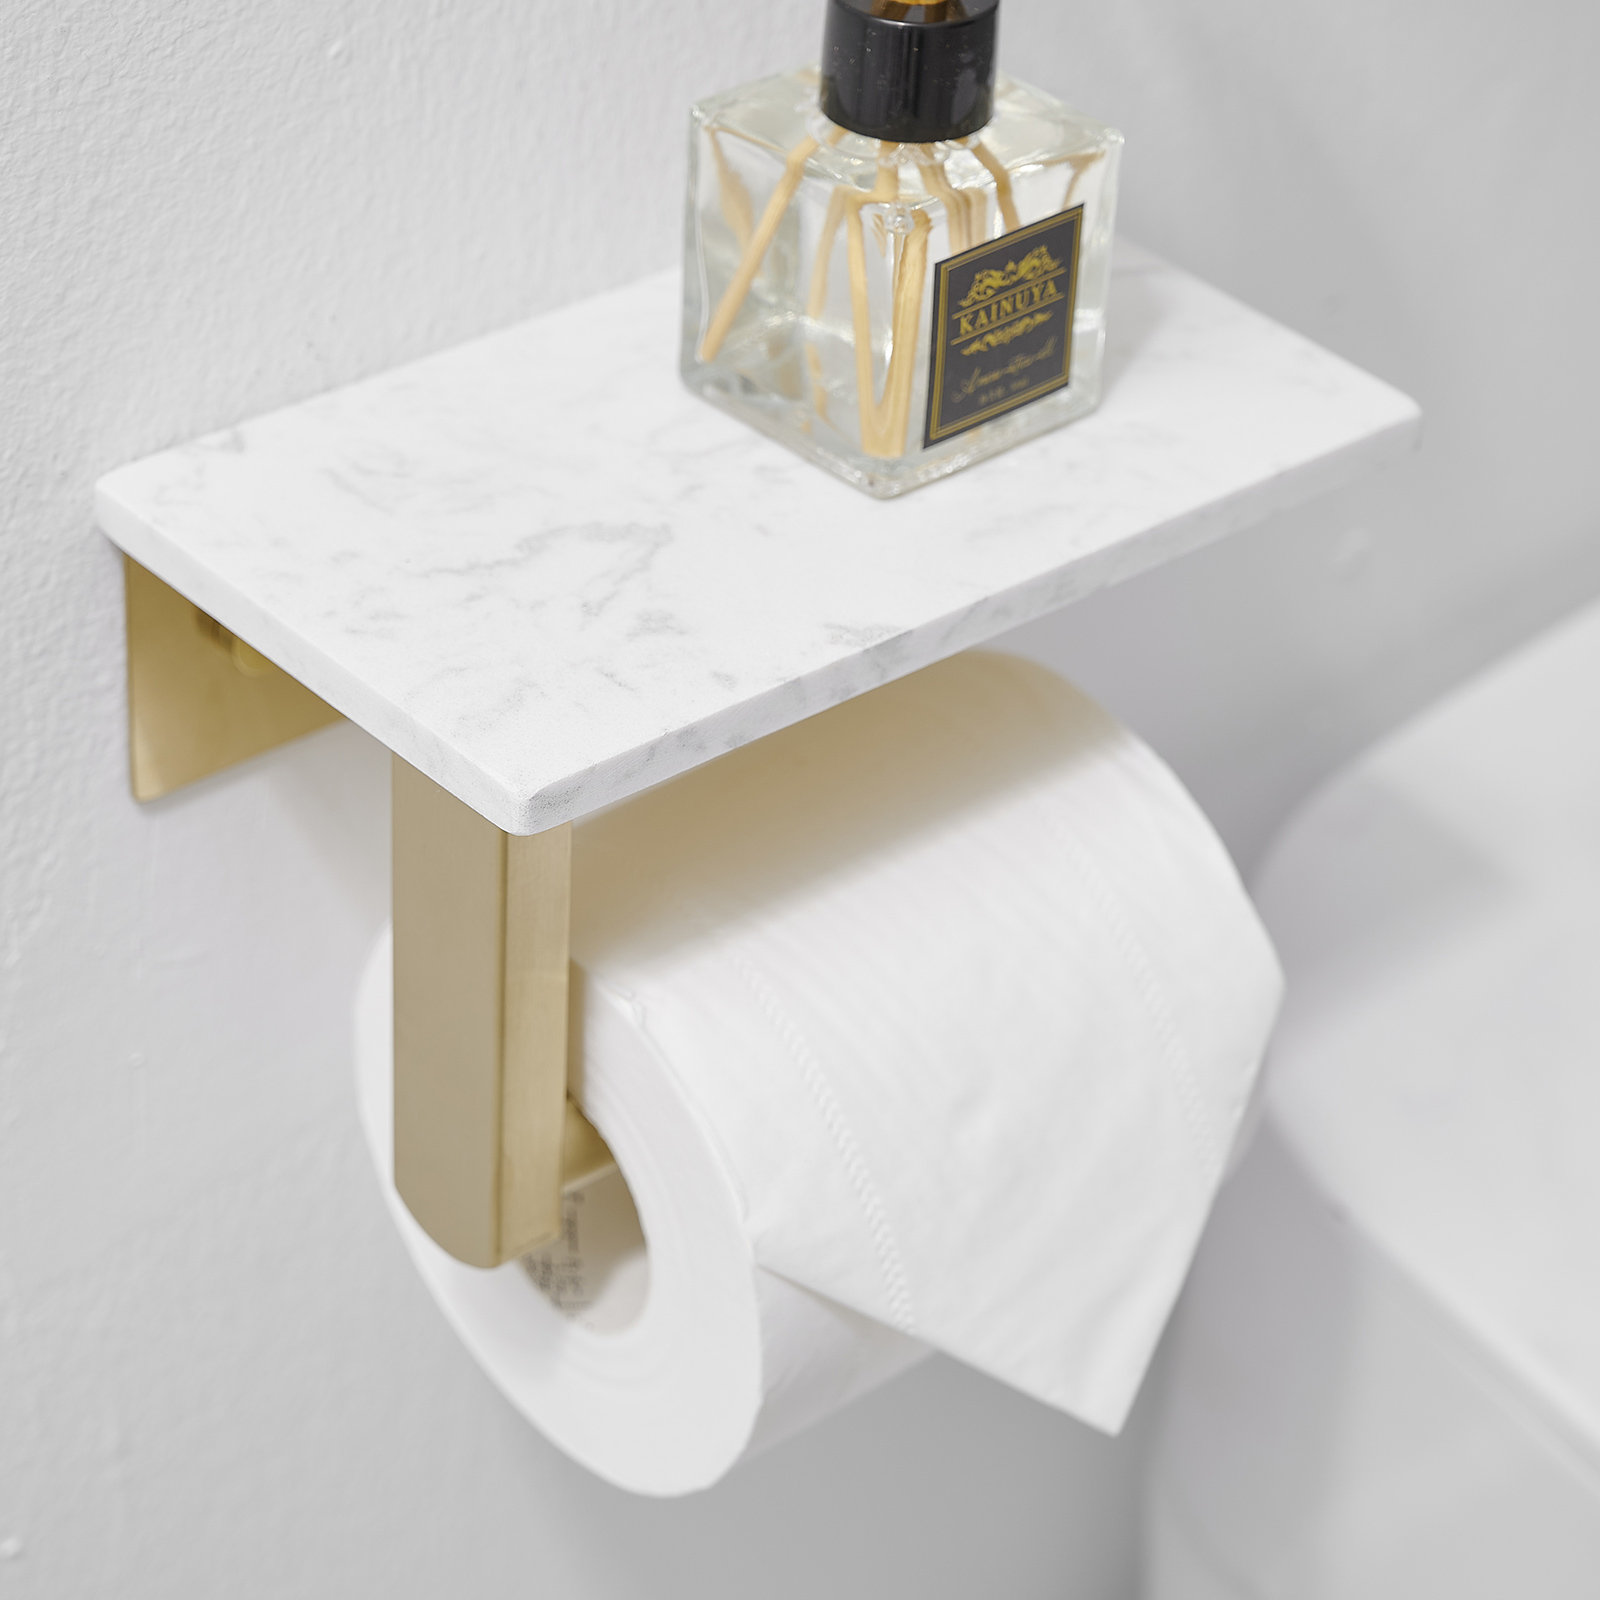 Honey-Can-Do Freestanding Toilet Paper Holder, Oil-Rubbed Bronze